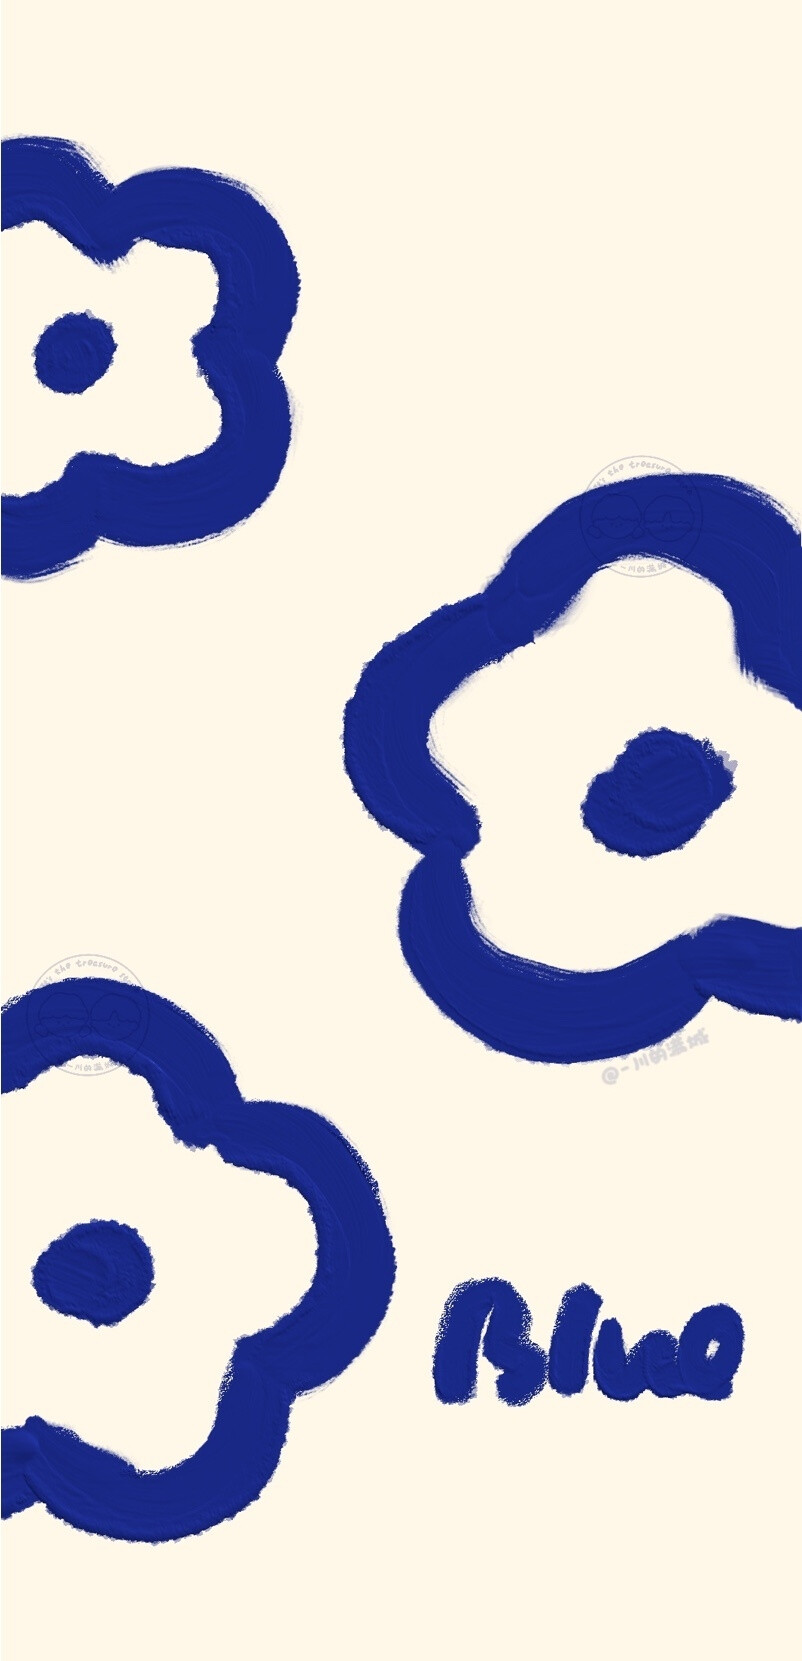 克莱因蓝壁纸 图源:一川的满城